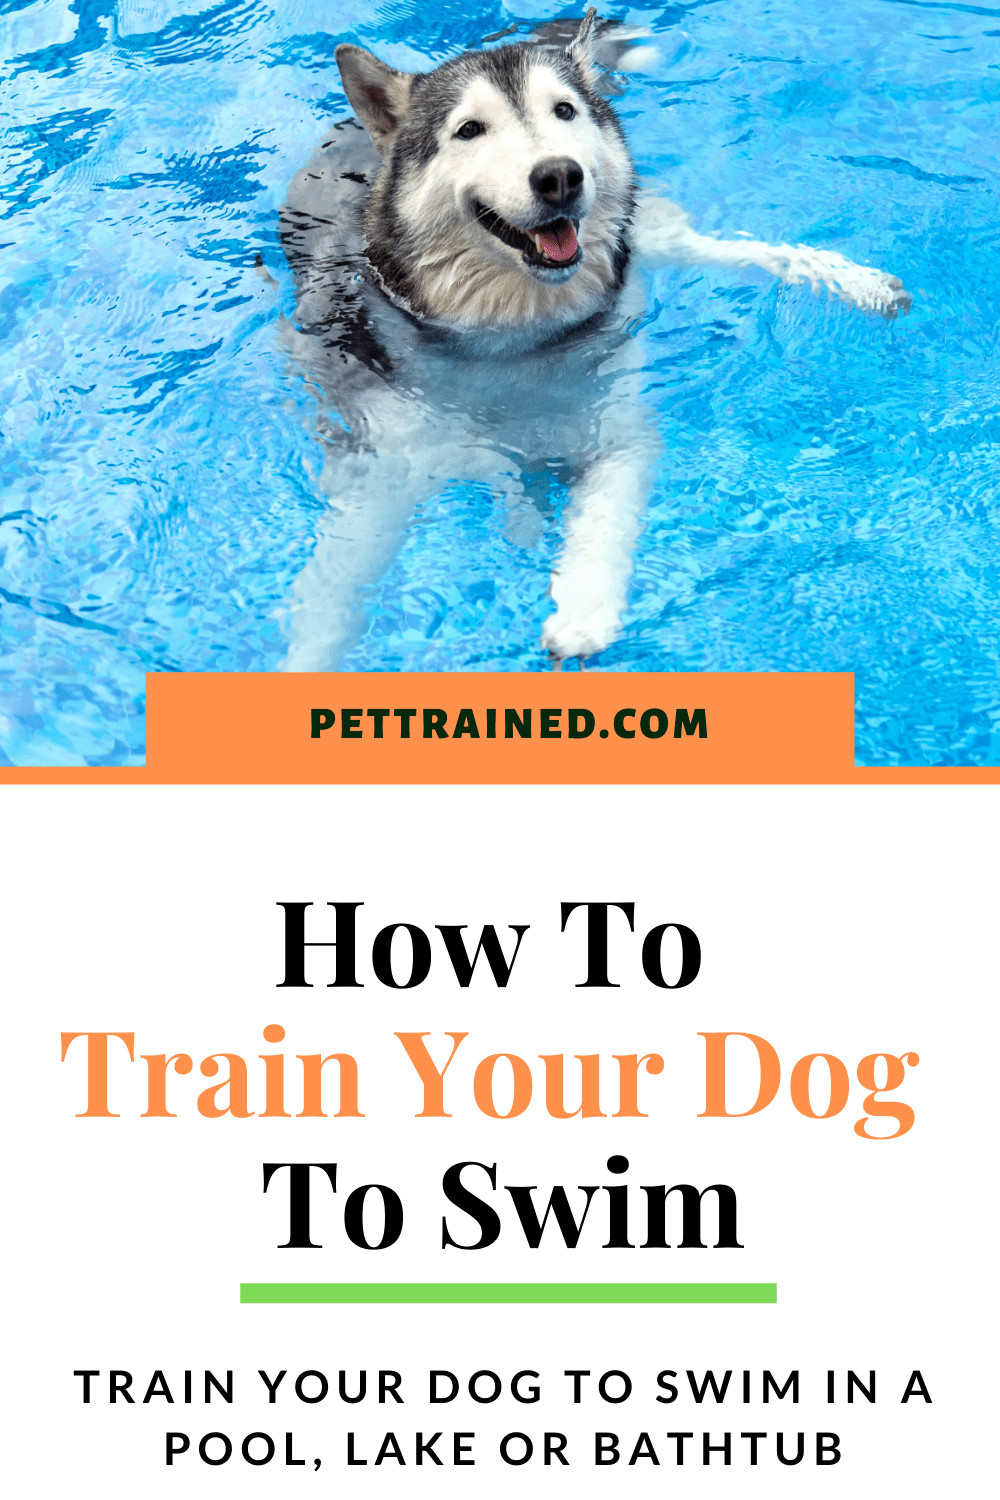 Train my dog to swim in a bathtub